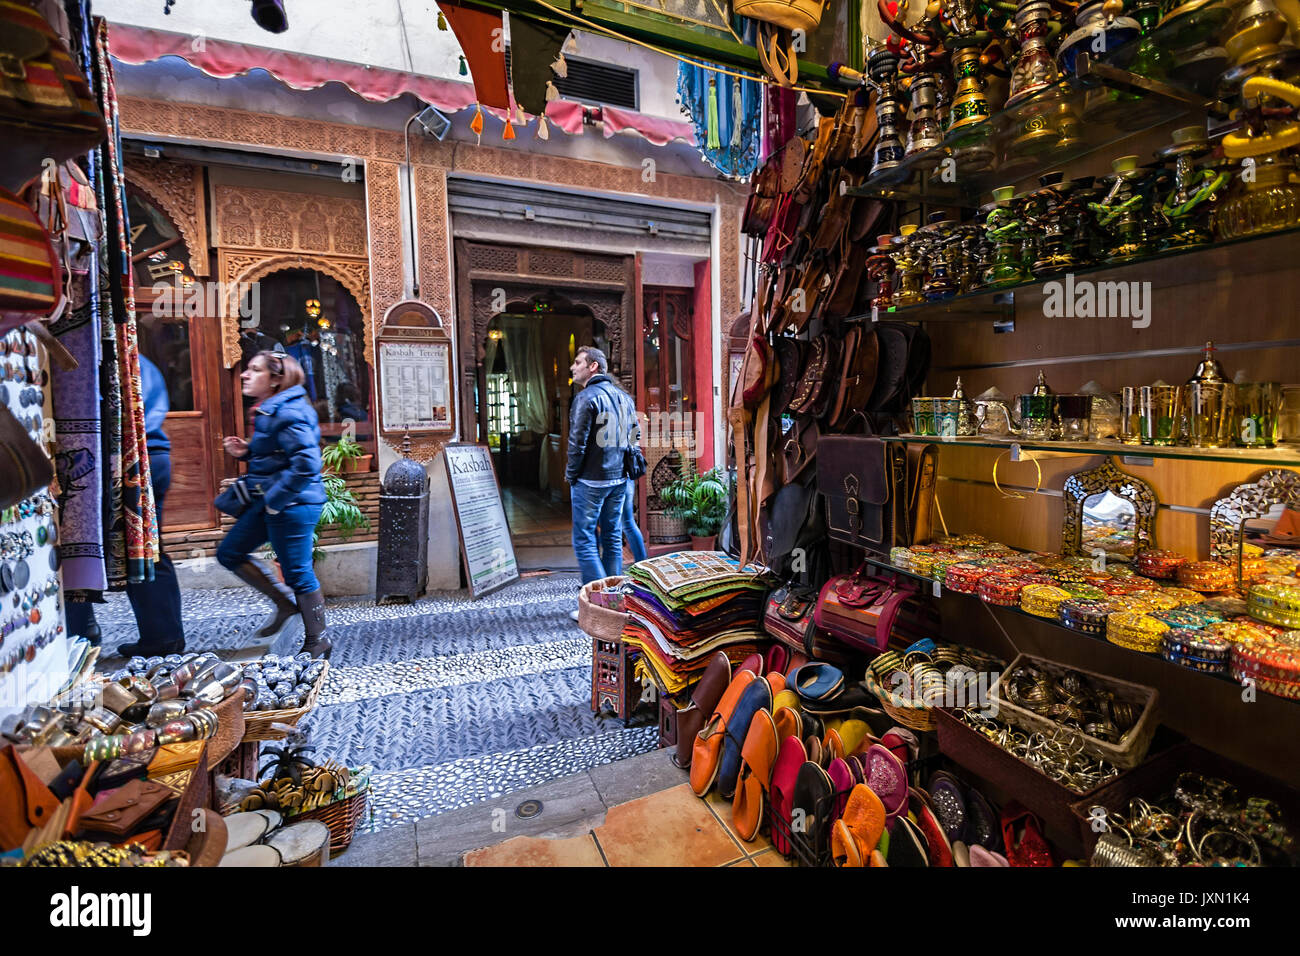 Commercio di prodotti arabi nel denominato Strada della sala da tè,vista dall'interno del negozio, Granada, Andalusia, Spagna Foto Stock